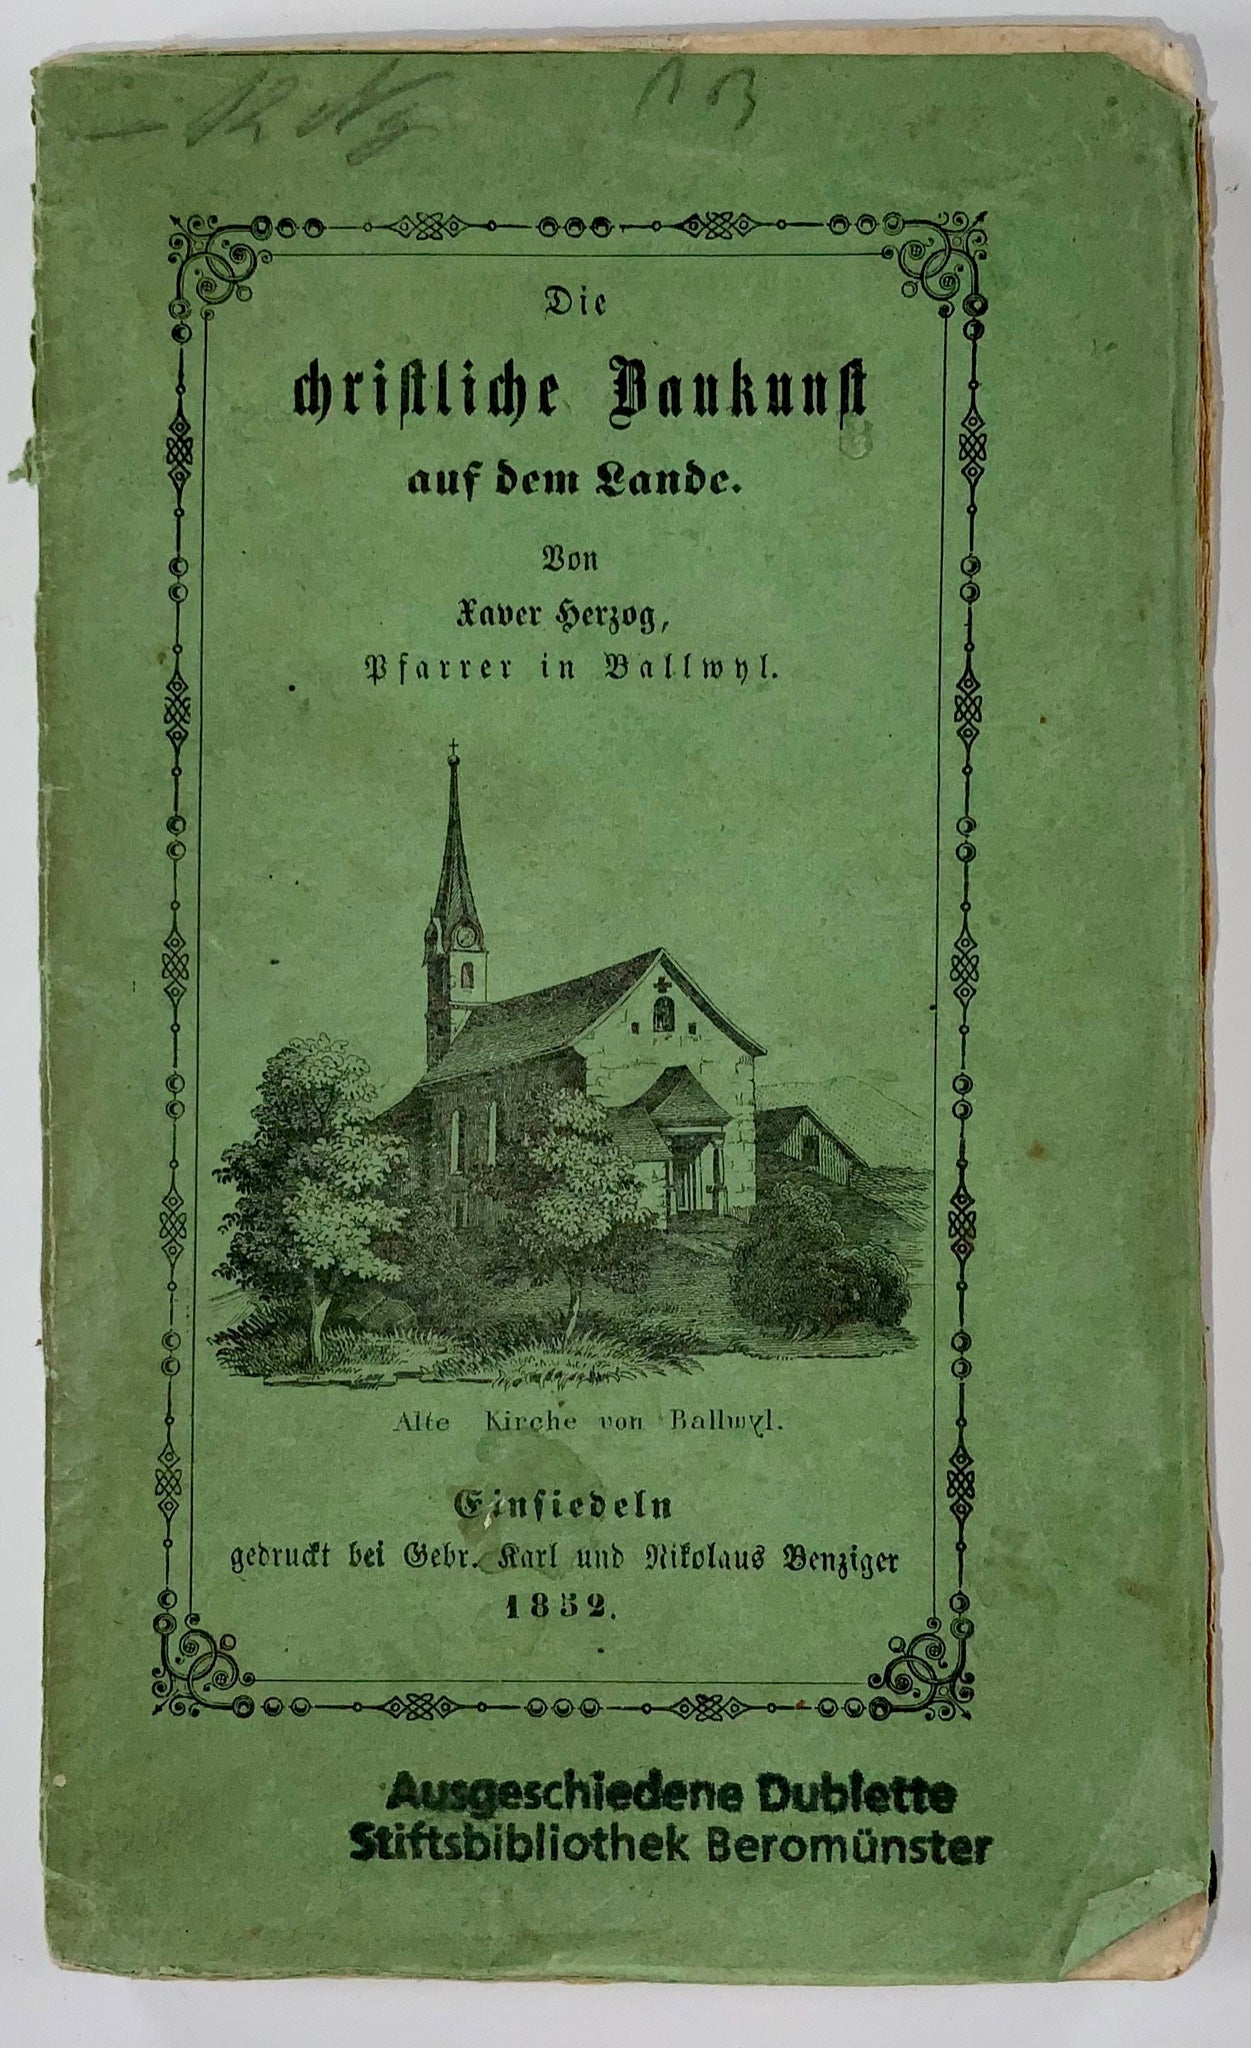 1852 Rural Church Architecture in Switzerland. Christliche Baukunst, X. Herzog, book